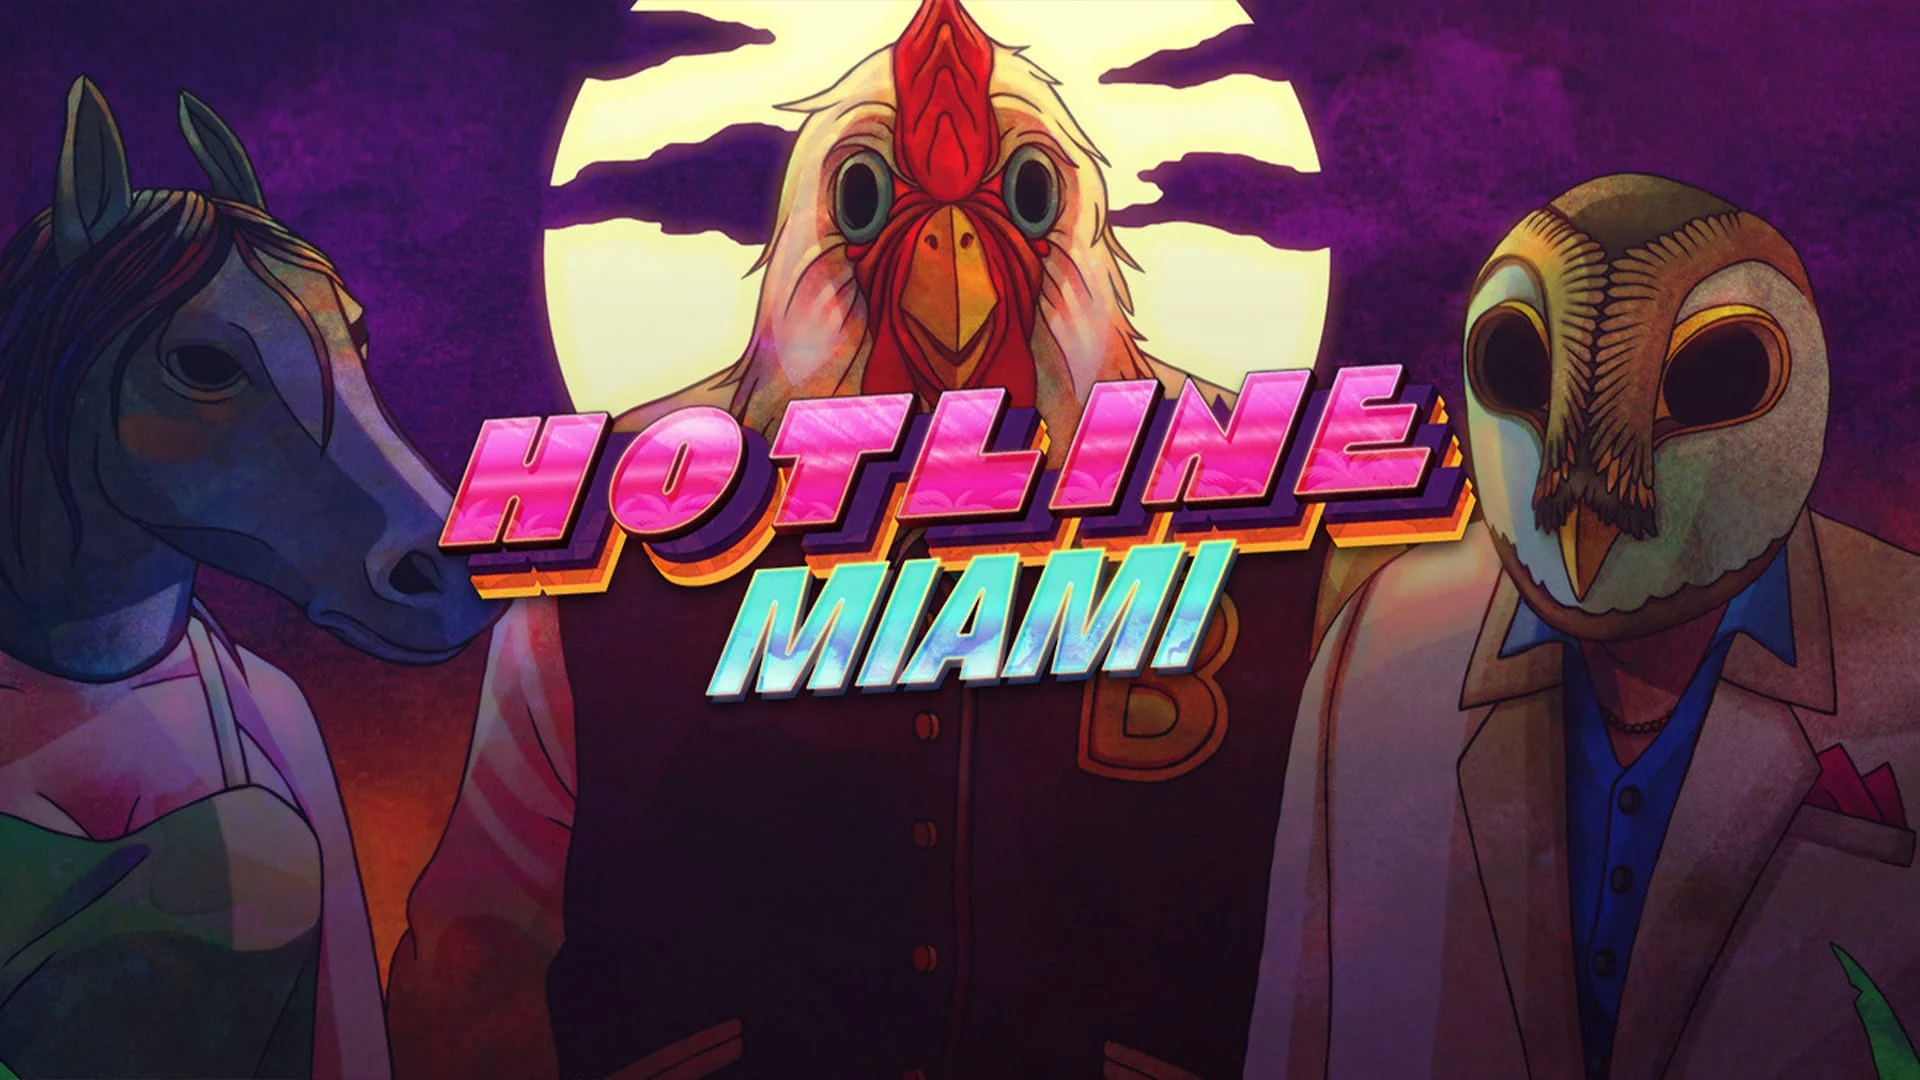 Hotline Miami 1 och 2 kommer sannolikt att portas på PlayStation 5